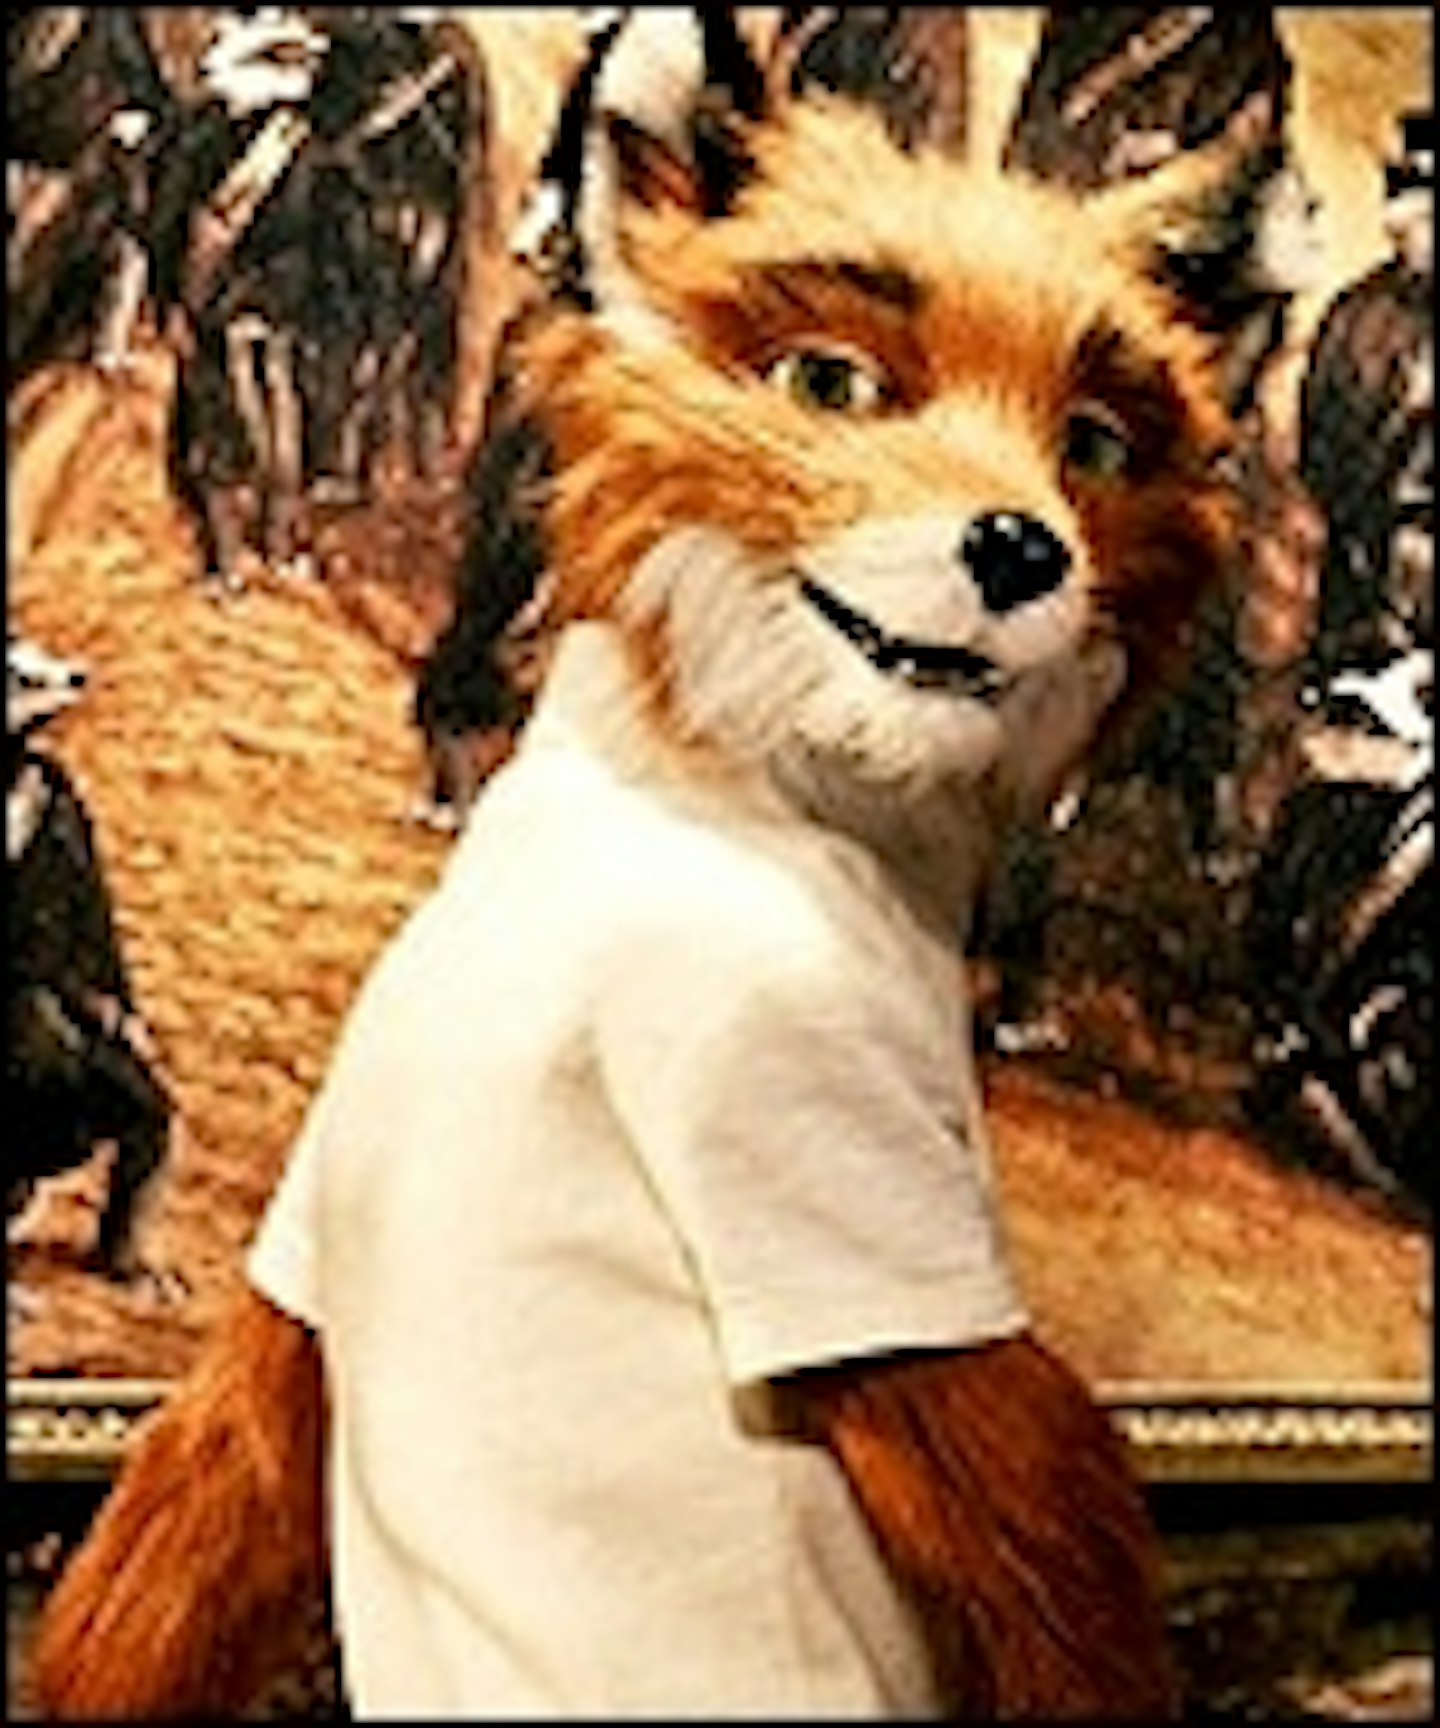 New Fantastic Mr Fox Featurette Online